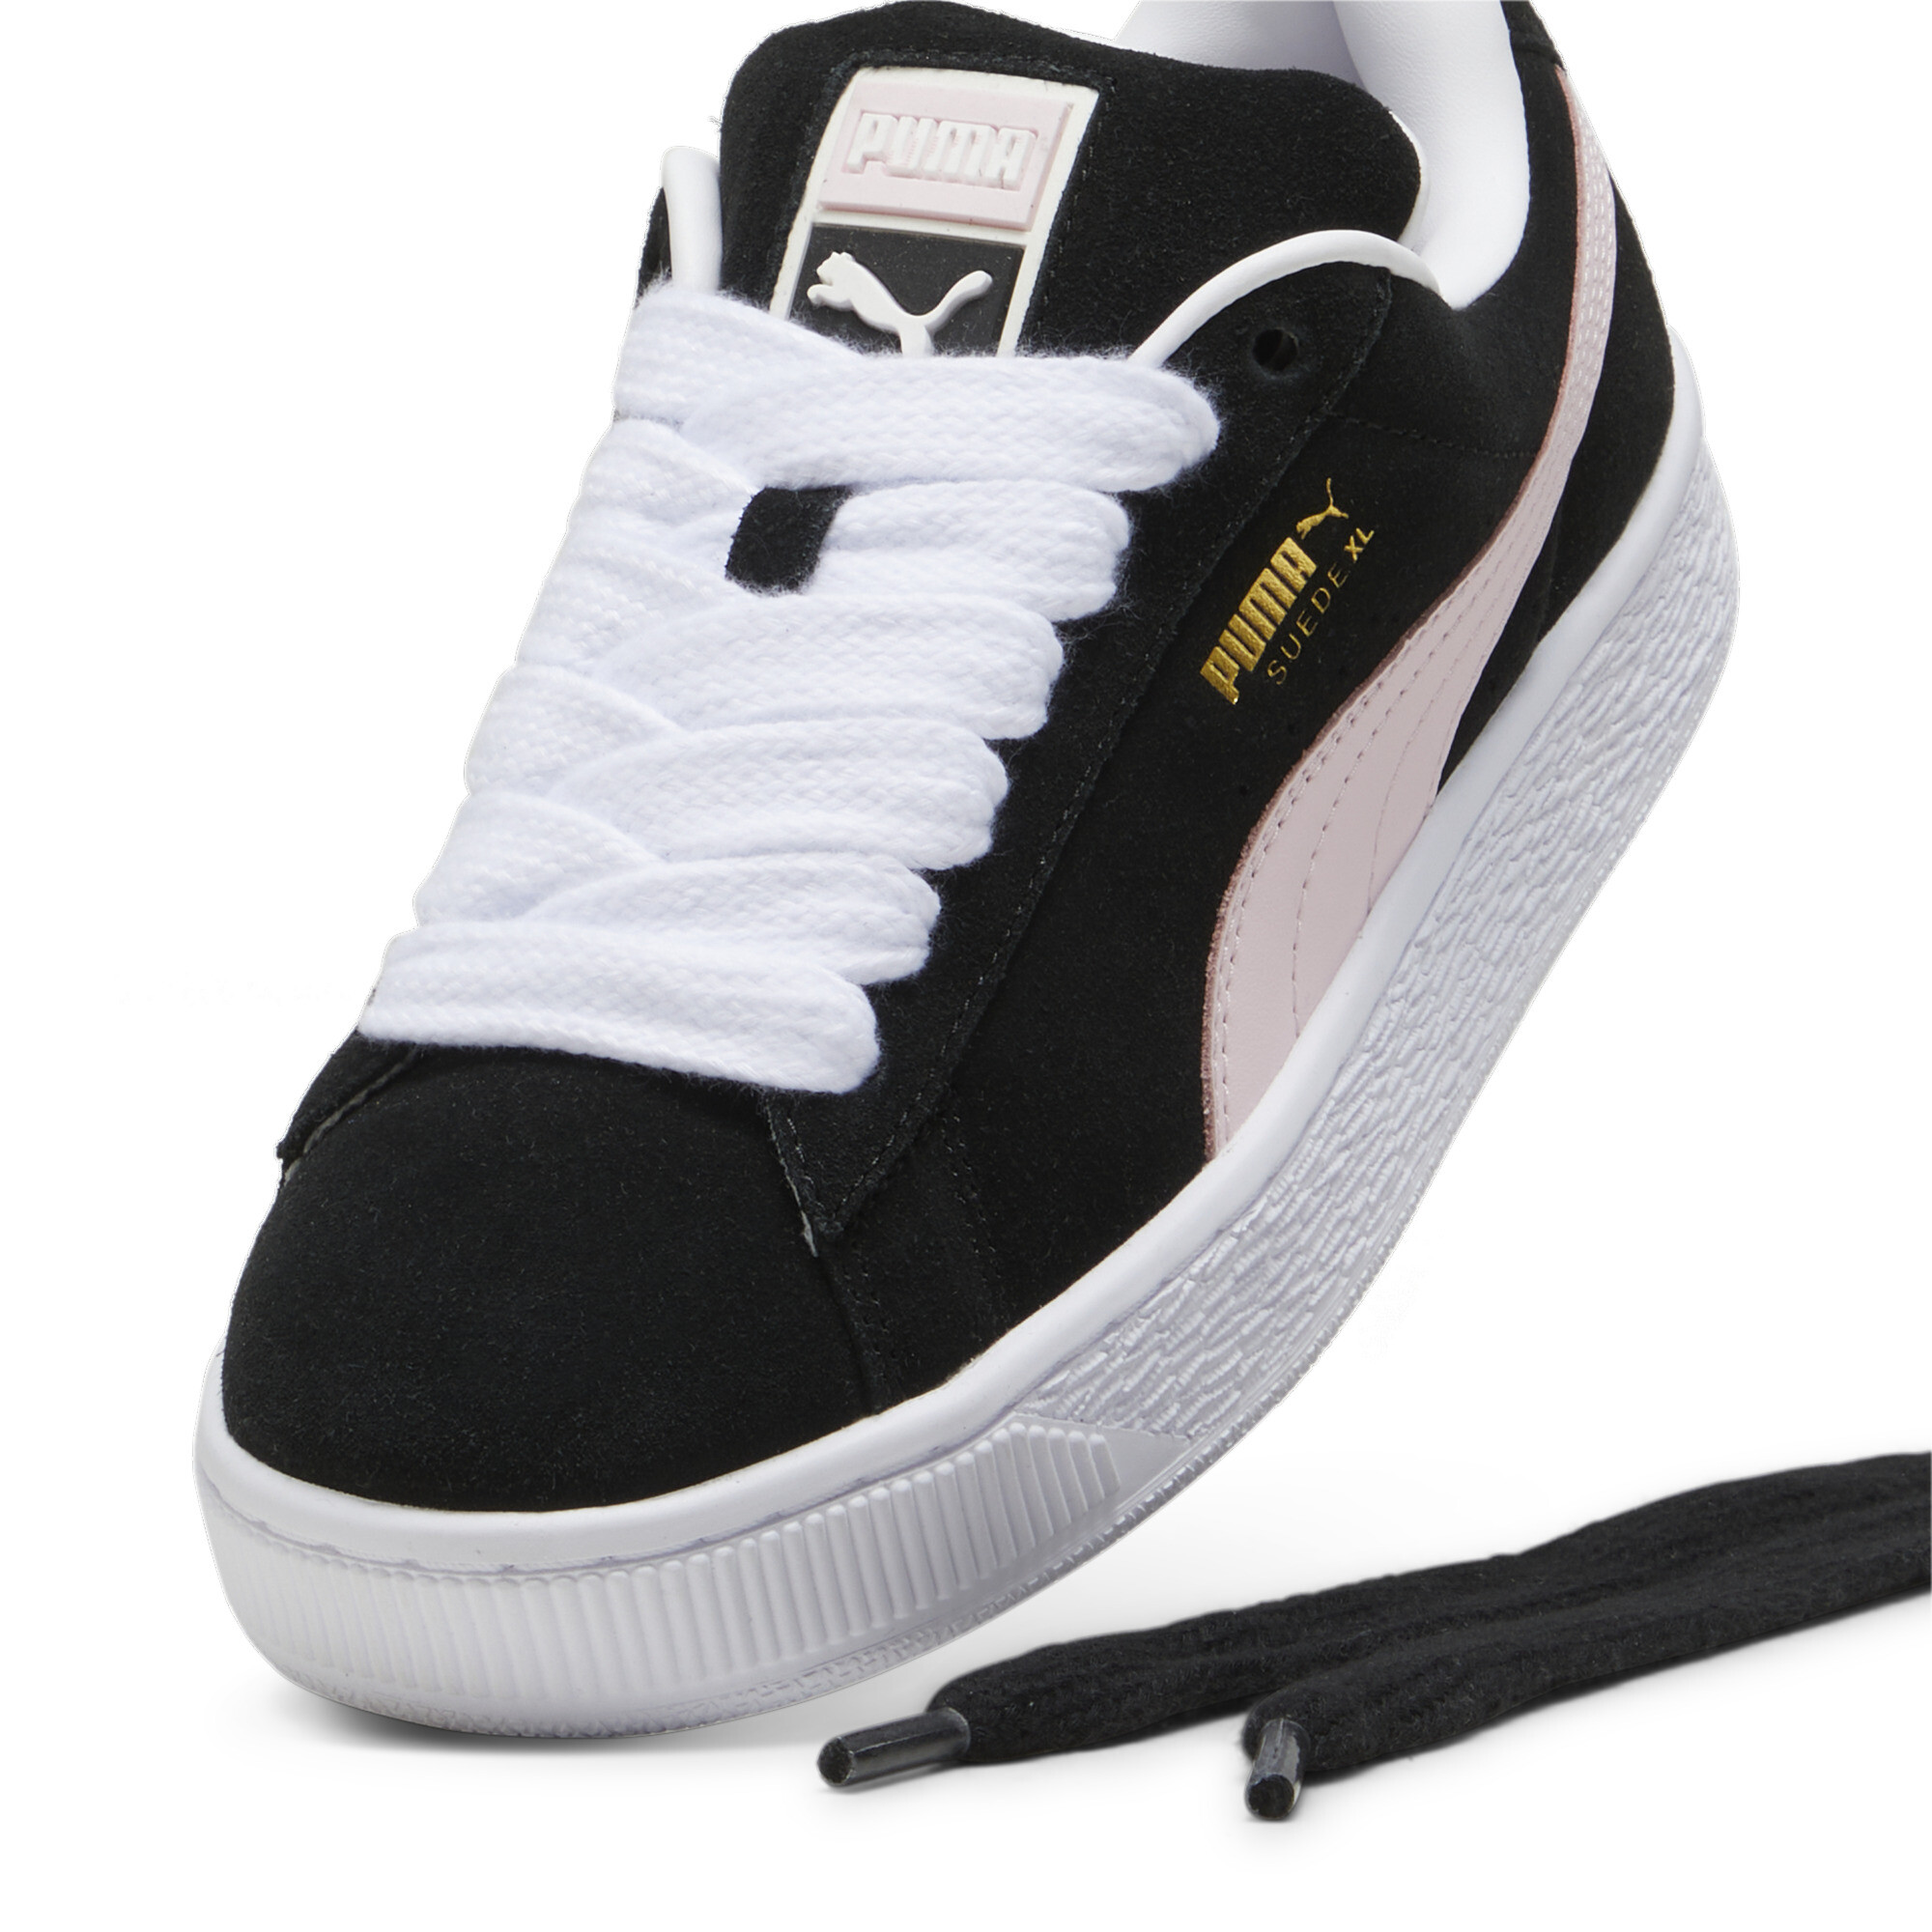 Puma Suede XL Sneakers Unisex, Black, Size 47, Shoes